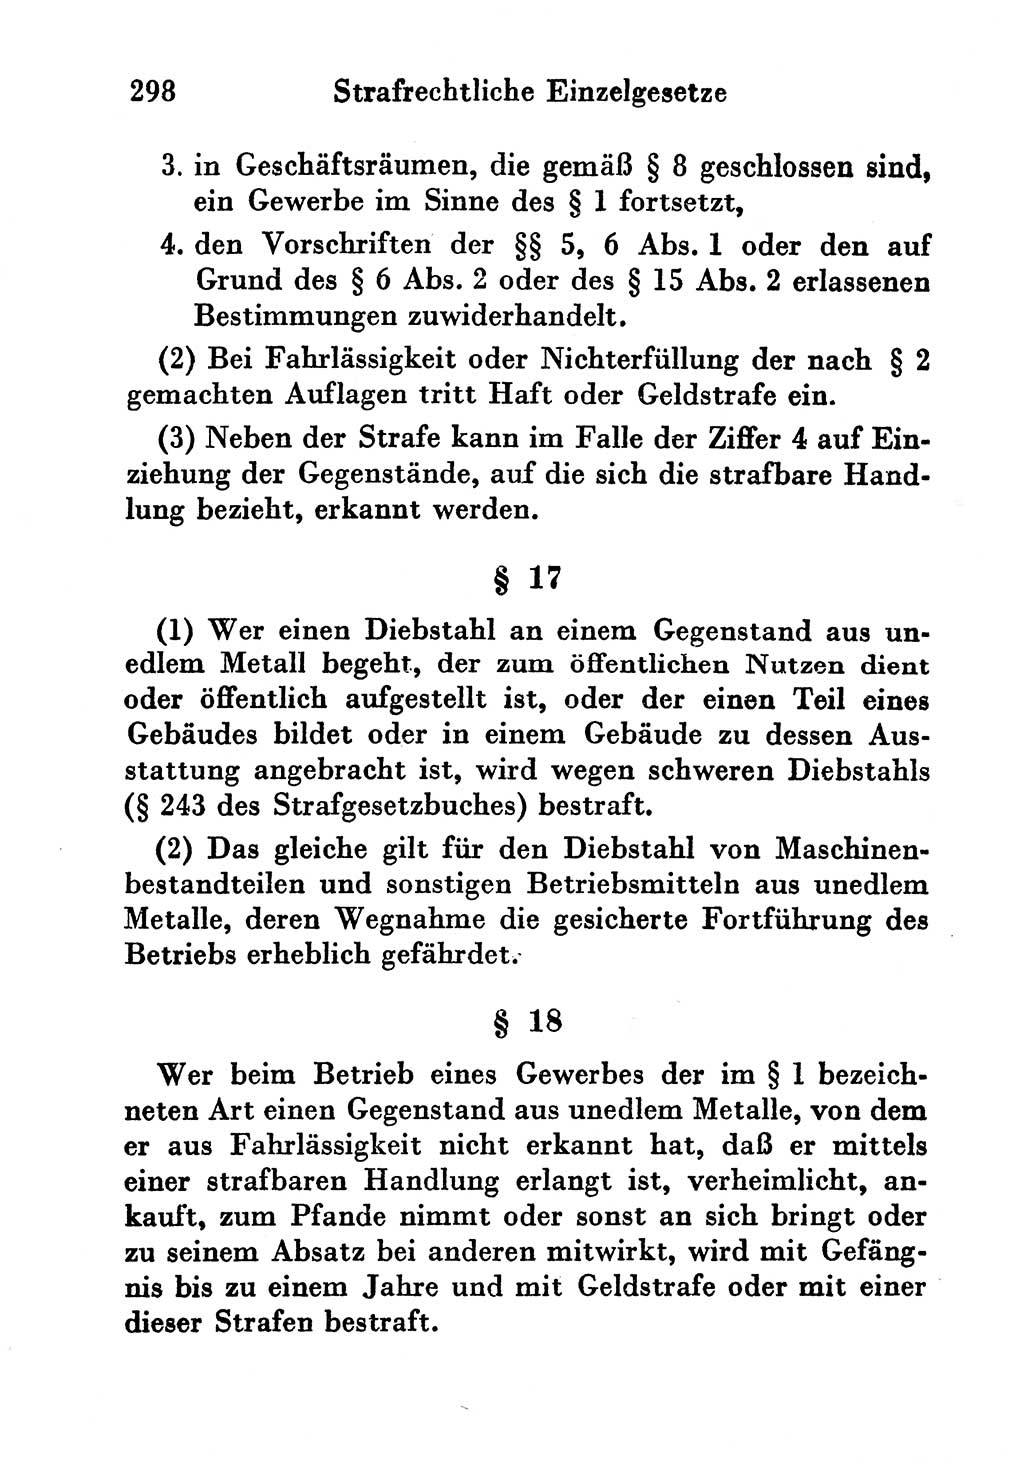 Strafgesetzbuch (StGB) und andere Strafgesetze [Deutsche Demokratische Republik (DDR)] 1956, Seite 298 (StGB Strafges. DDR 1956, S. 298)